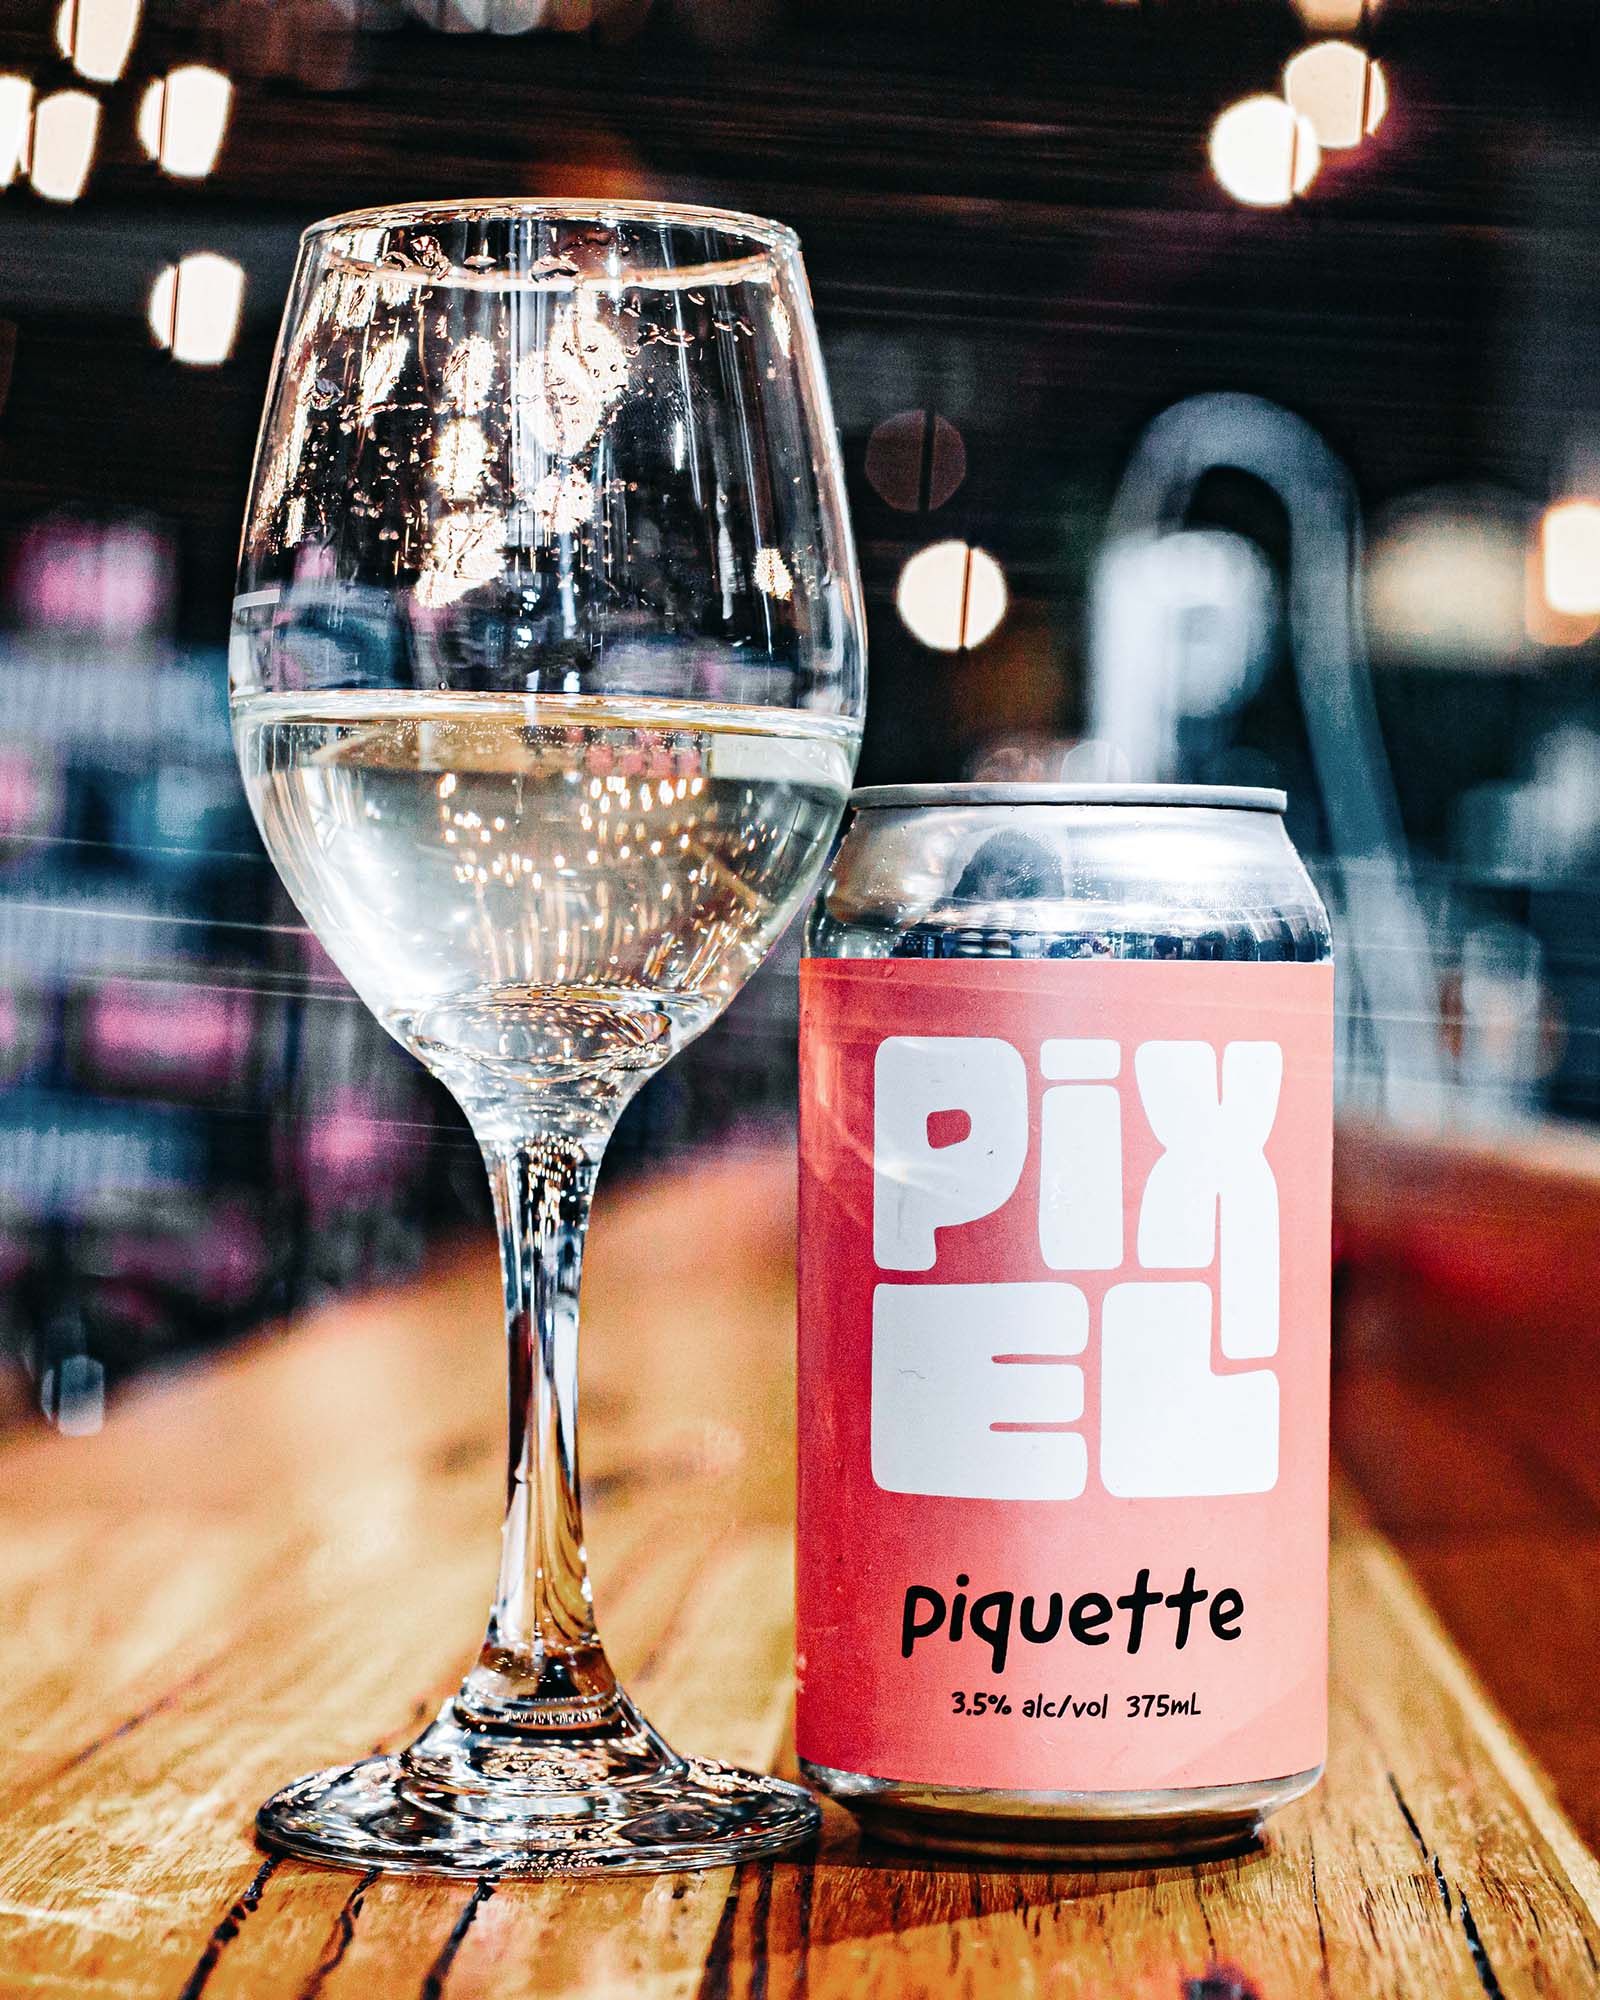 Pixel Piquette